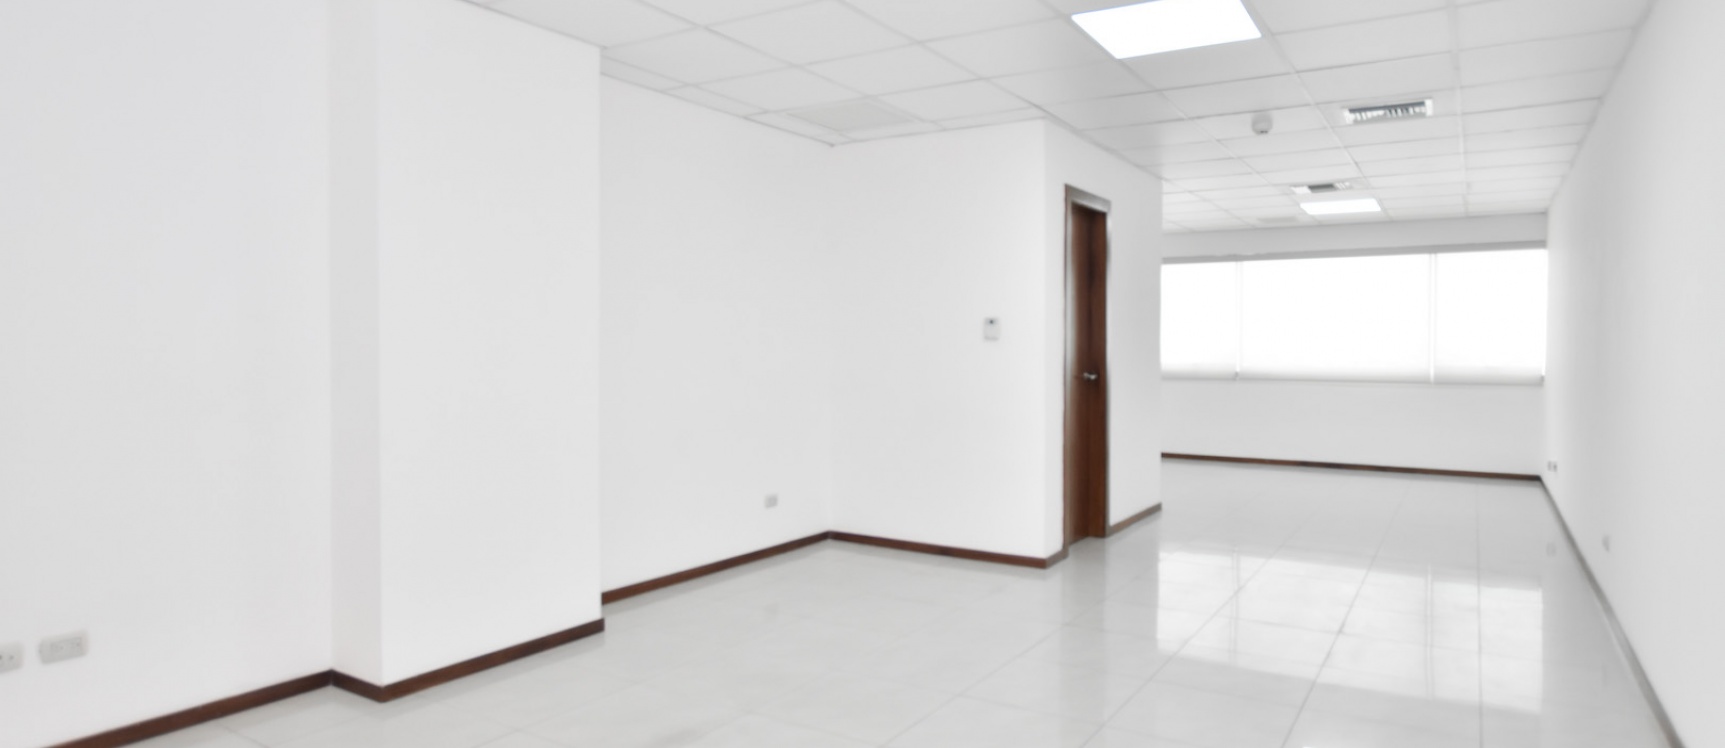 GeoBienes - Oficina de oportunidad en alquiler ubicada en el Edificio Trade Building - Plusvalia Guayaquil Casas de venta y alquiler Inmobiliaria Ecuador